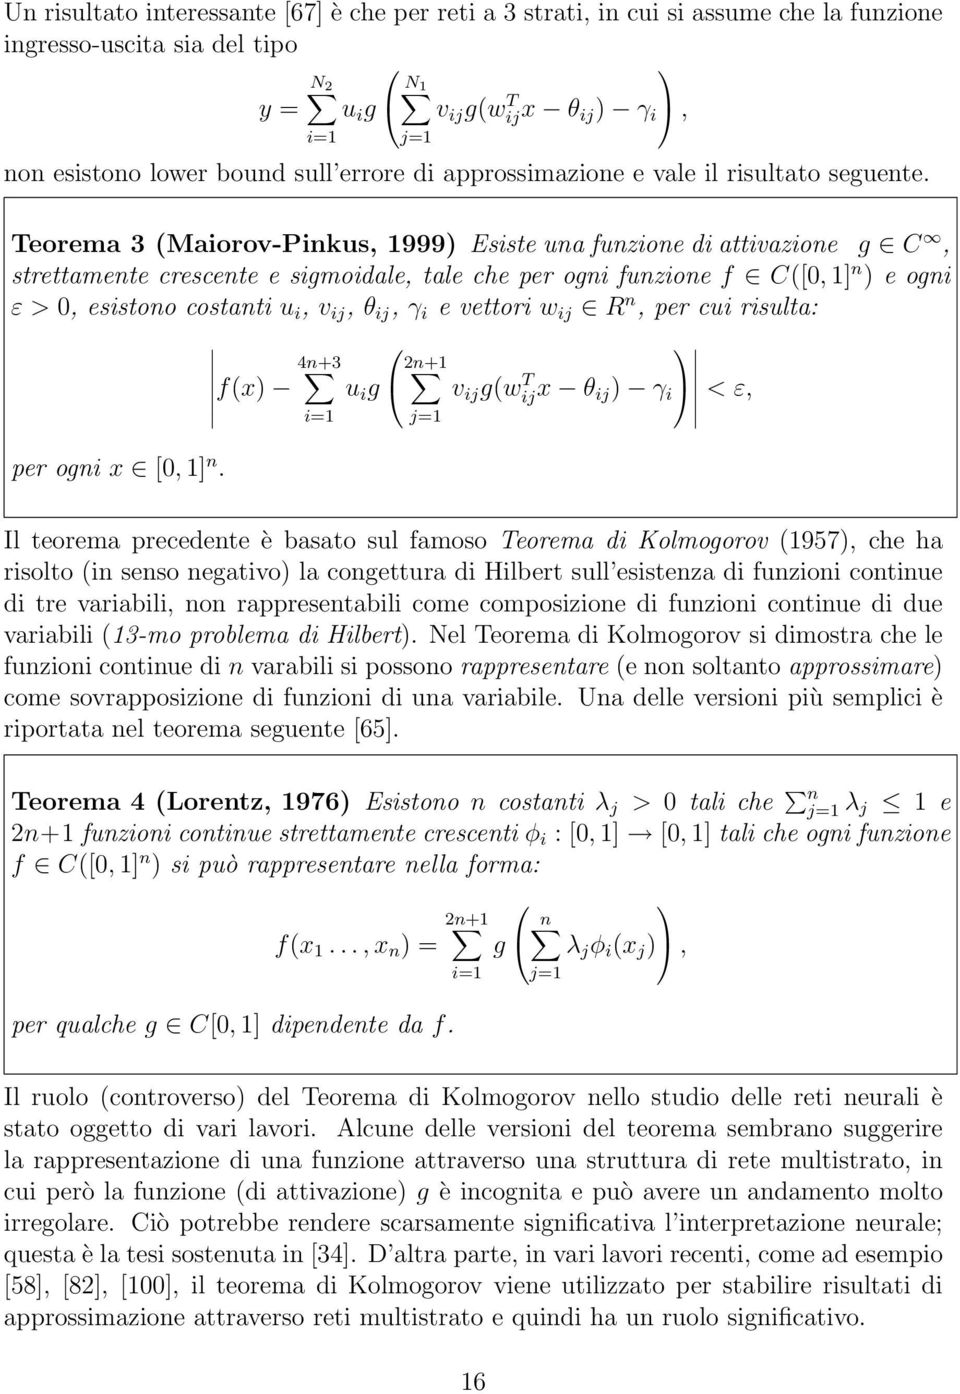 Teorema 3 (Maiorov-Pinkus, 1999) Esiste una funzione di attivazione g C, strettamente crescente e sigmoidale, tale che per ogni funzione f C([0, 1] n ) e ogni ε > 0, esistono costanti u i, v ij, θ